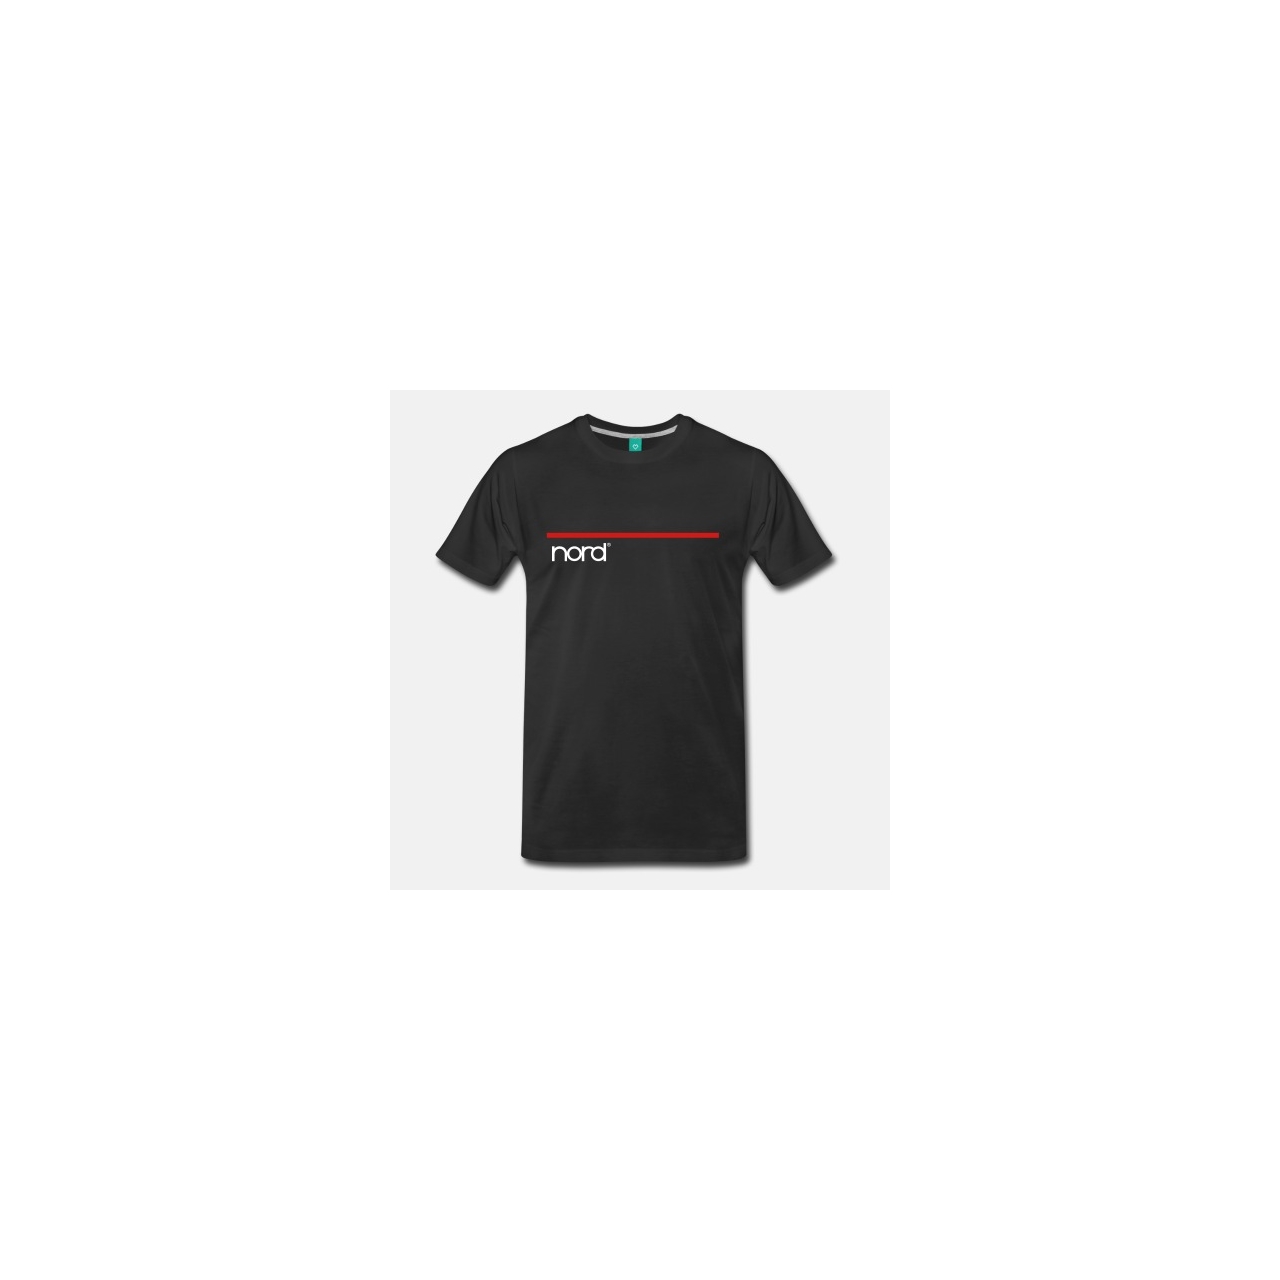 Nord T-Shirt Black S